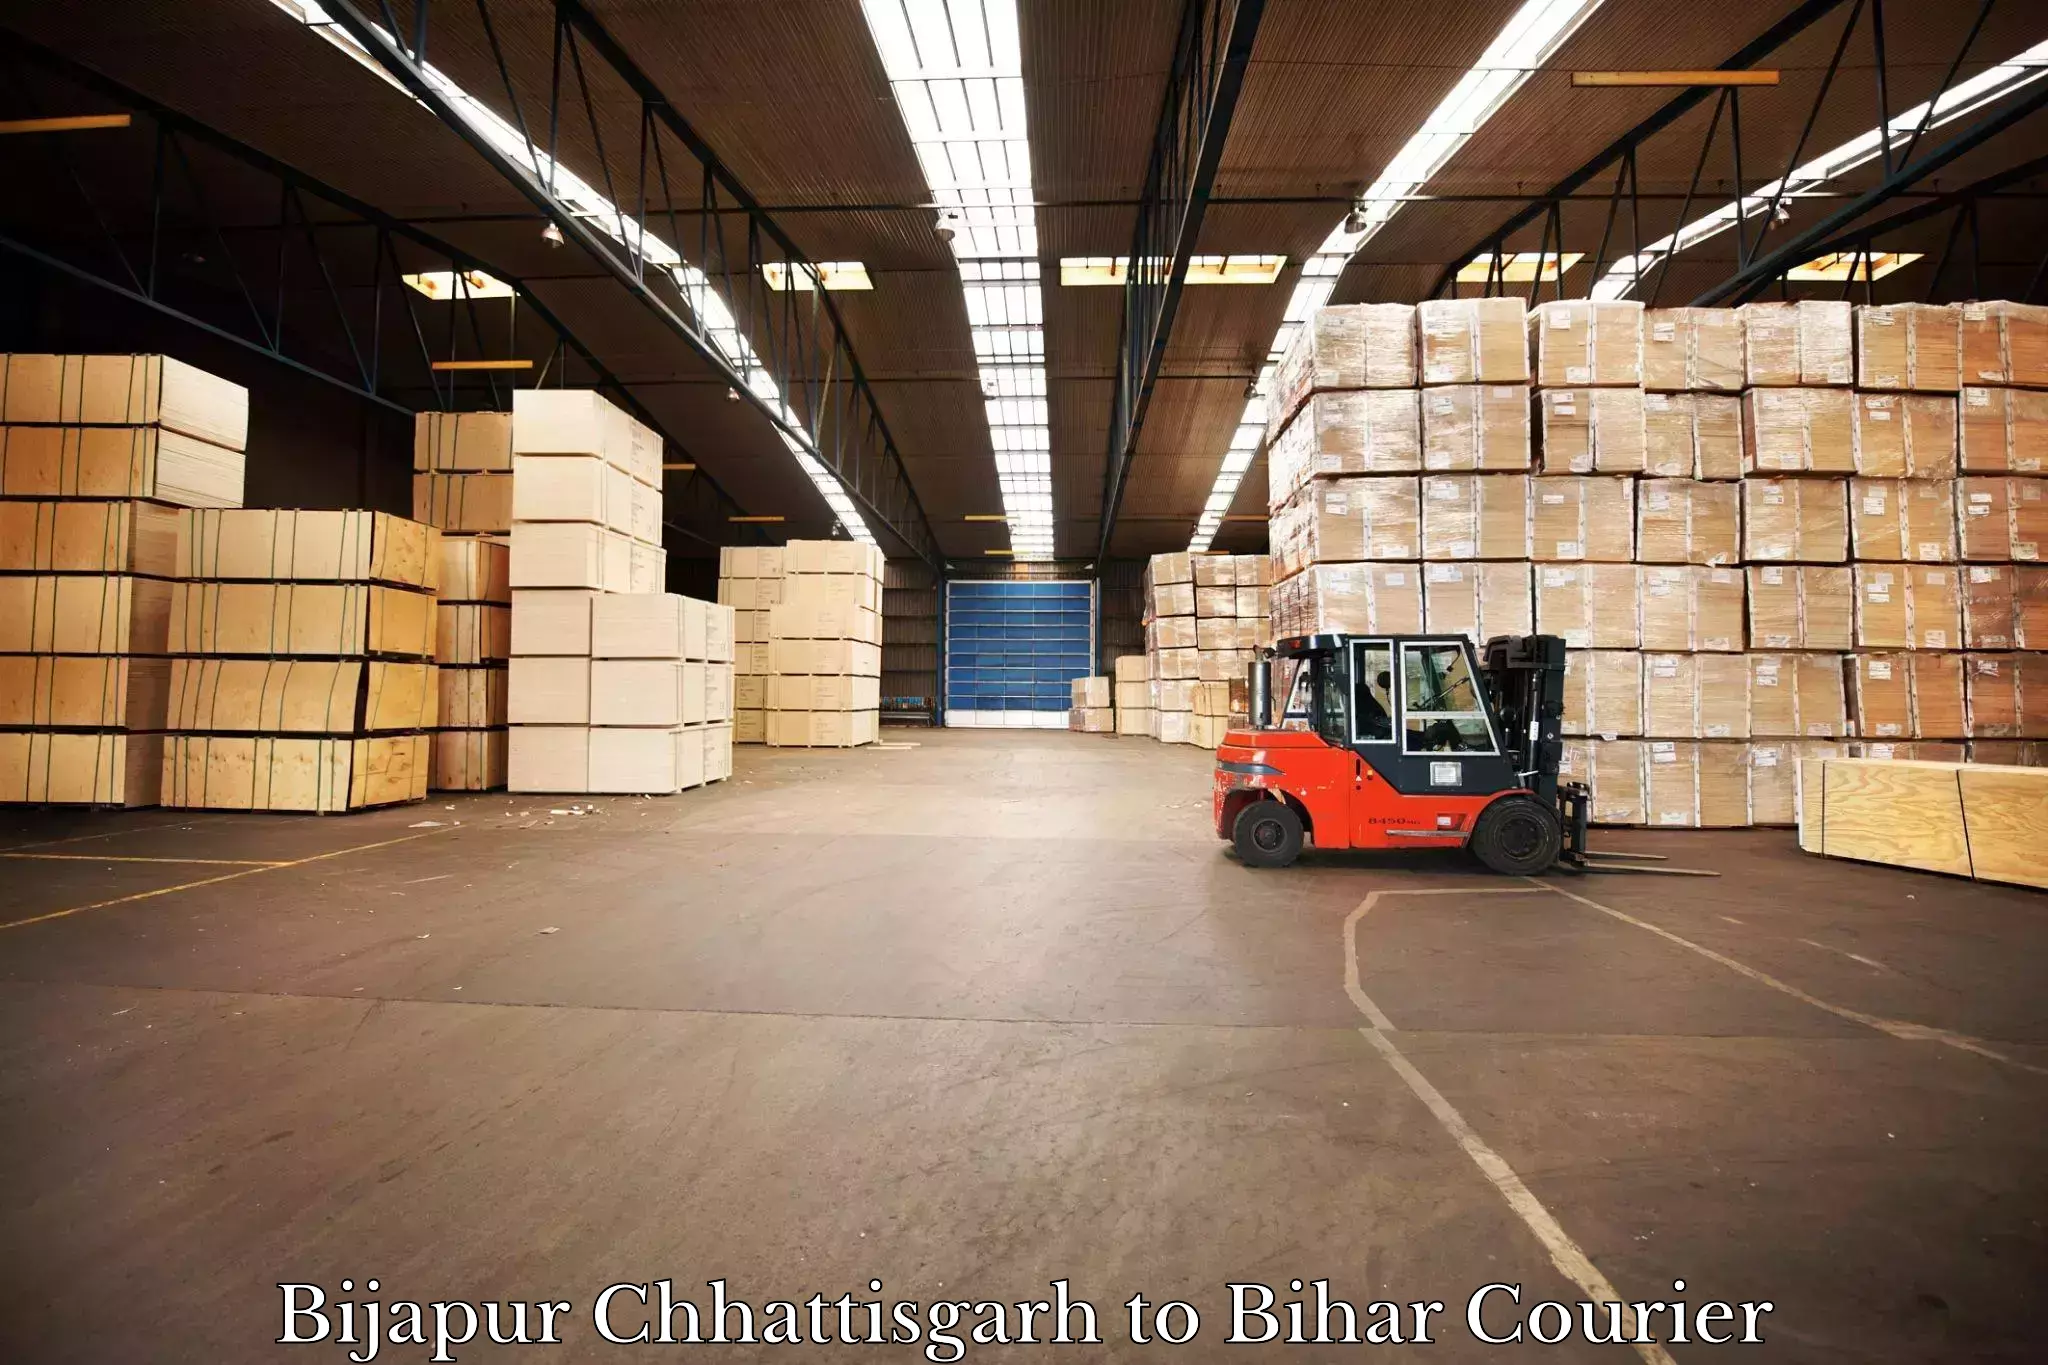 Digital courier platforms Bijapur Chhattisgarh to Bihar